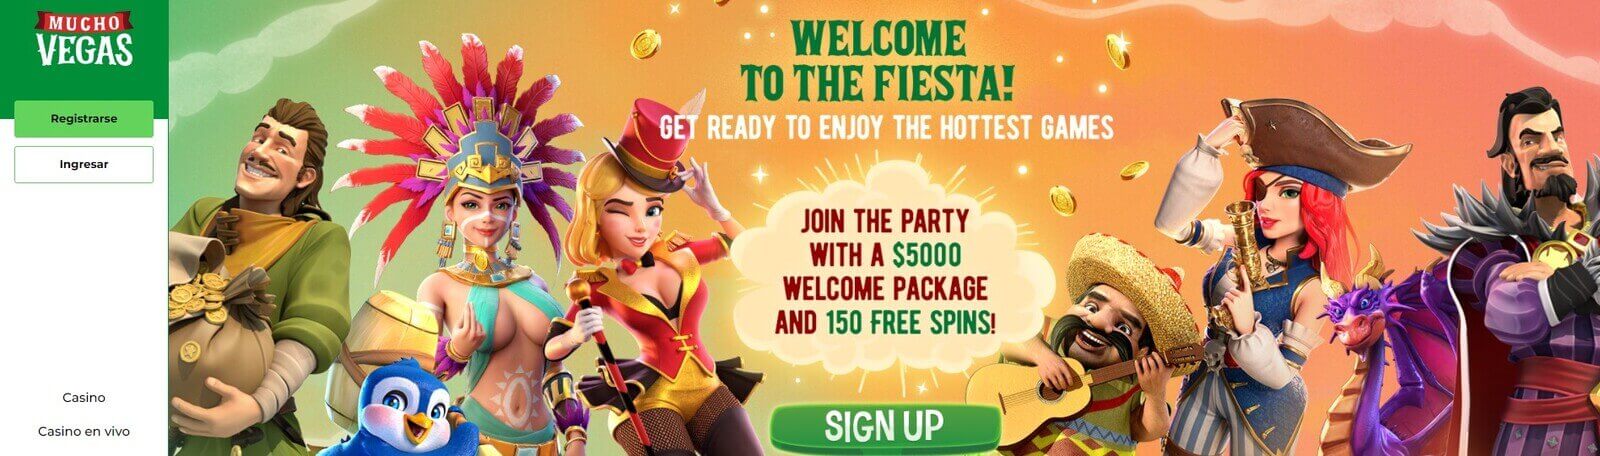 Página web de Mucho Vegas Casino 